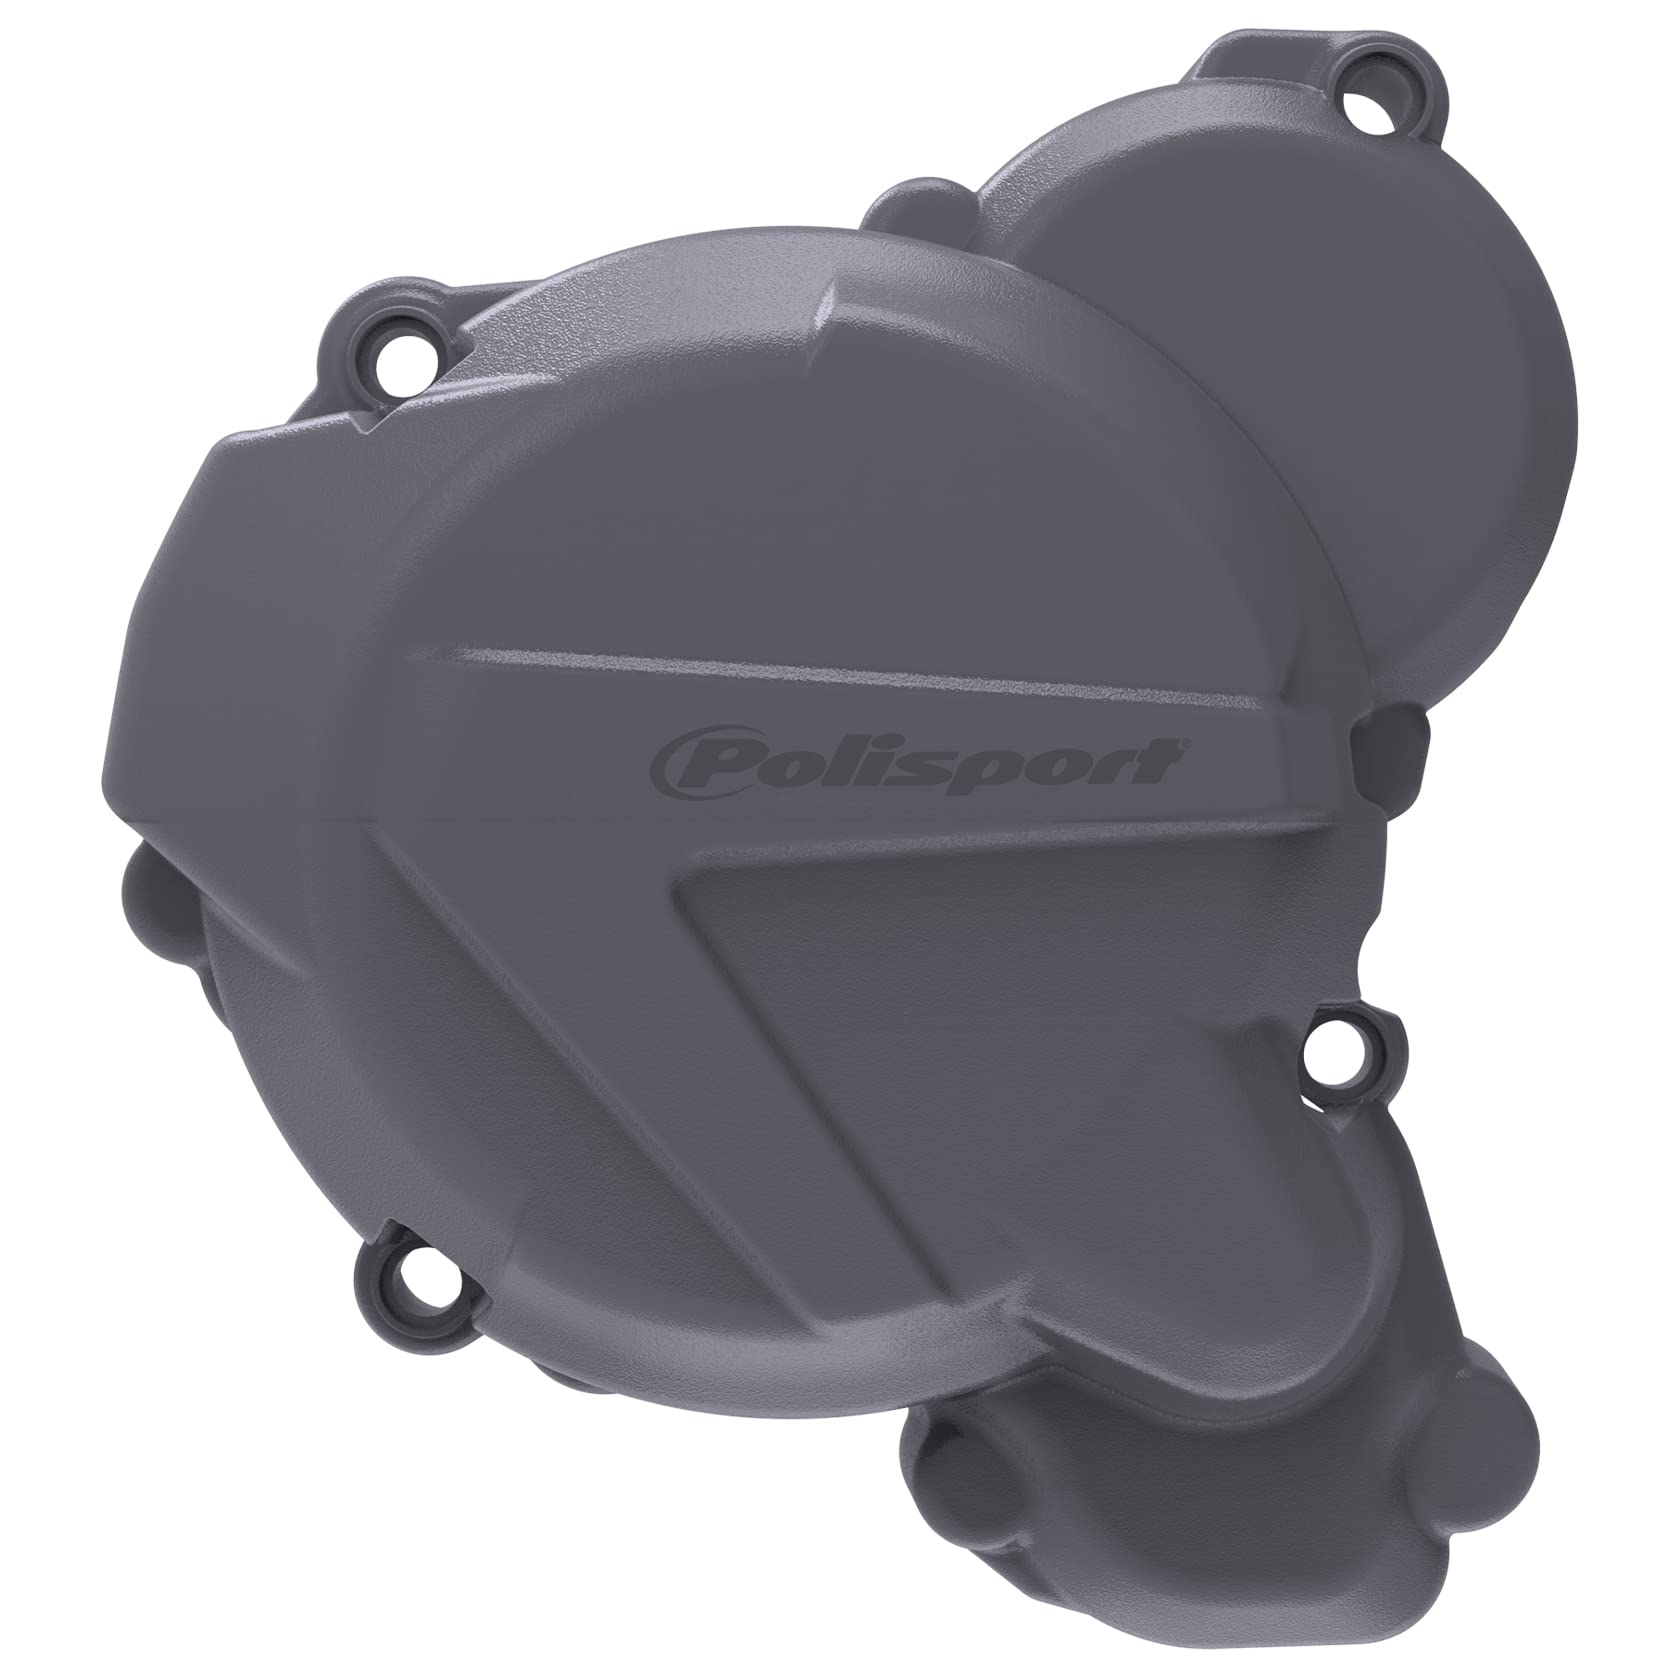 POLISPORT 8467500004 - Zünddeckelschutz aus schlag- und abriebfestem Polyamid kompatibel mit Motorrädern KTM, Husqvarna in Farbe nardo grau von Polisport